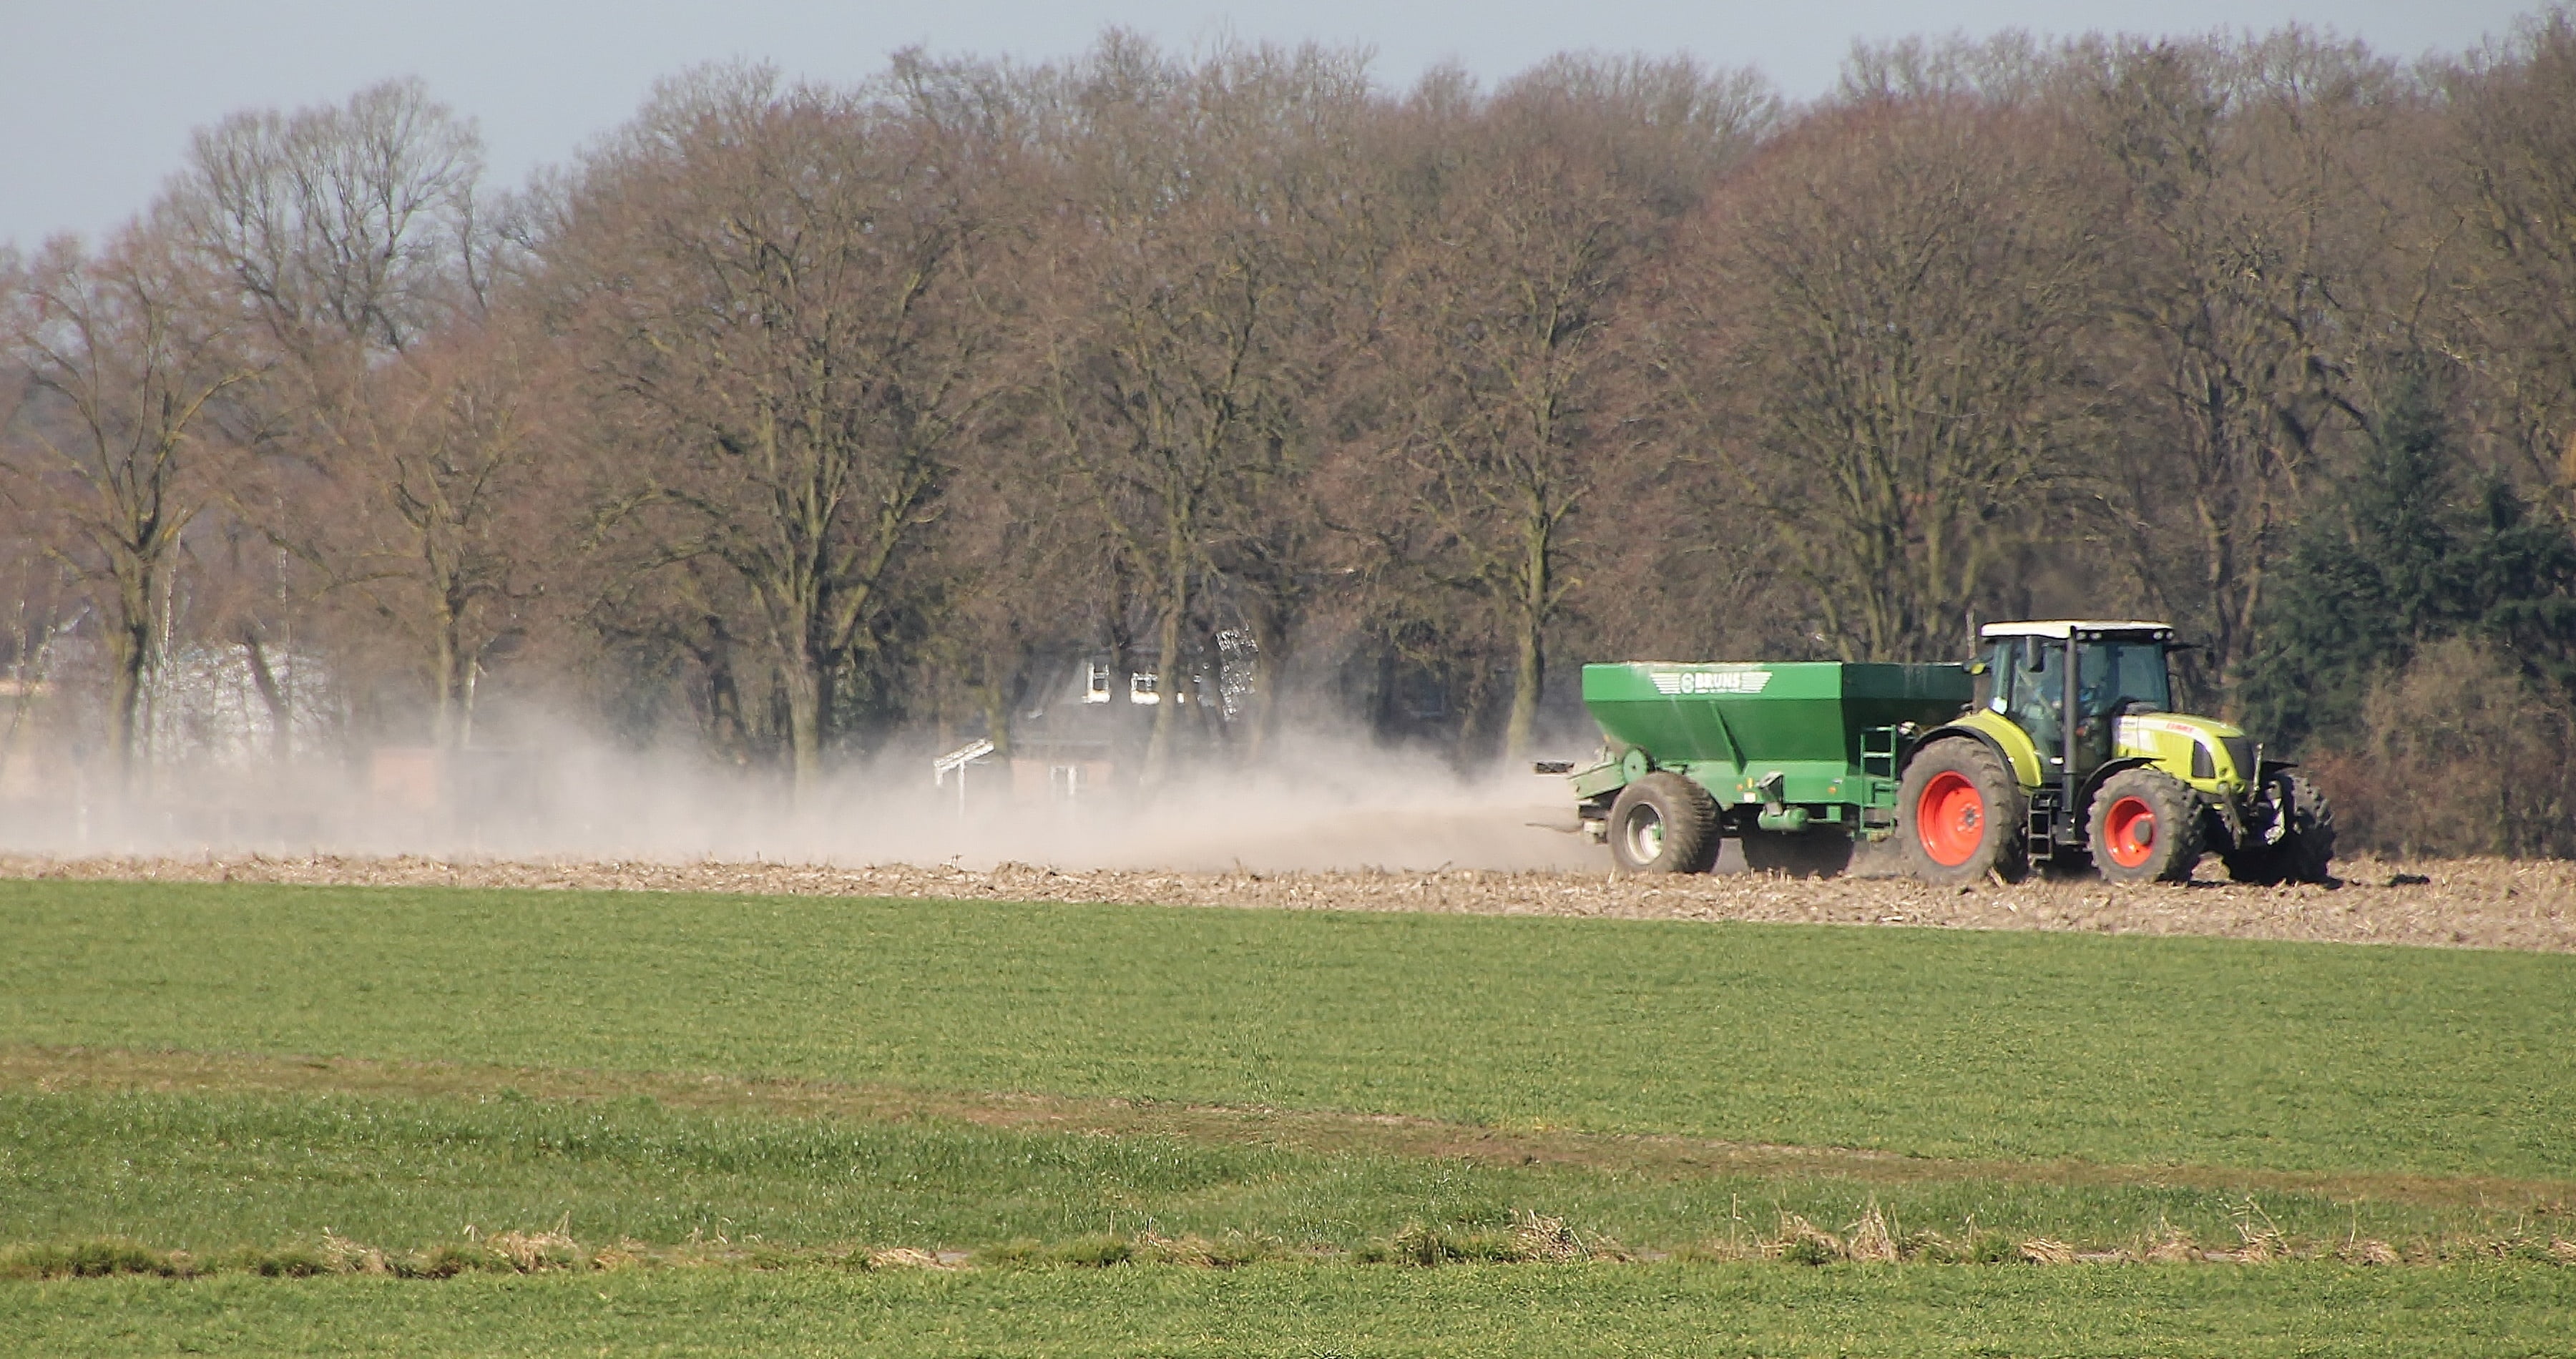 A tractor sprays fertiliser over a field